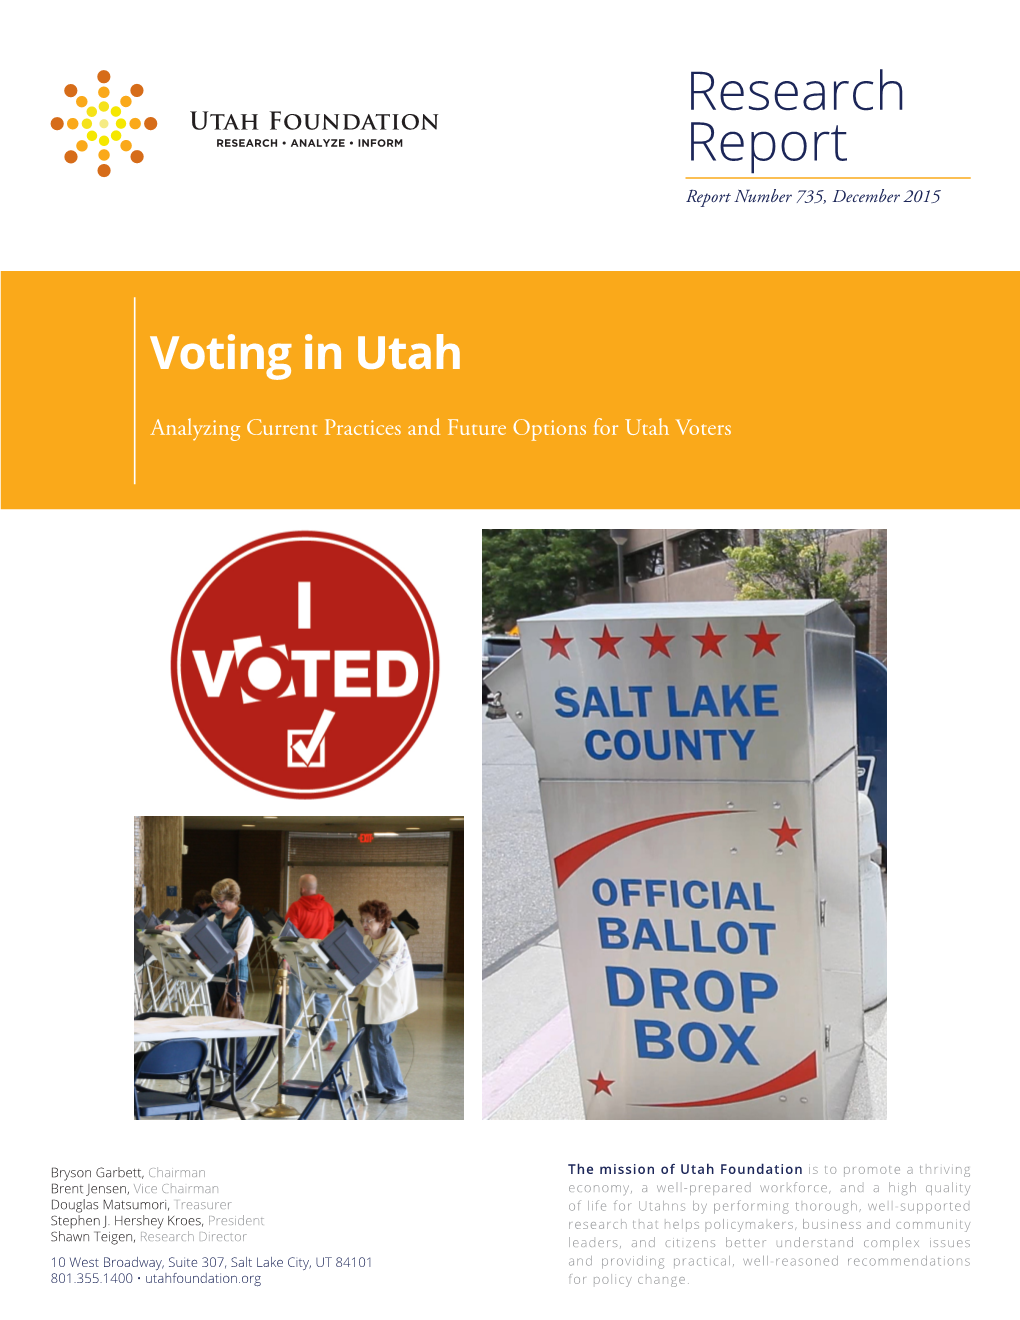 Voting in Utah